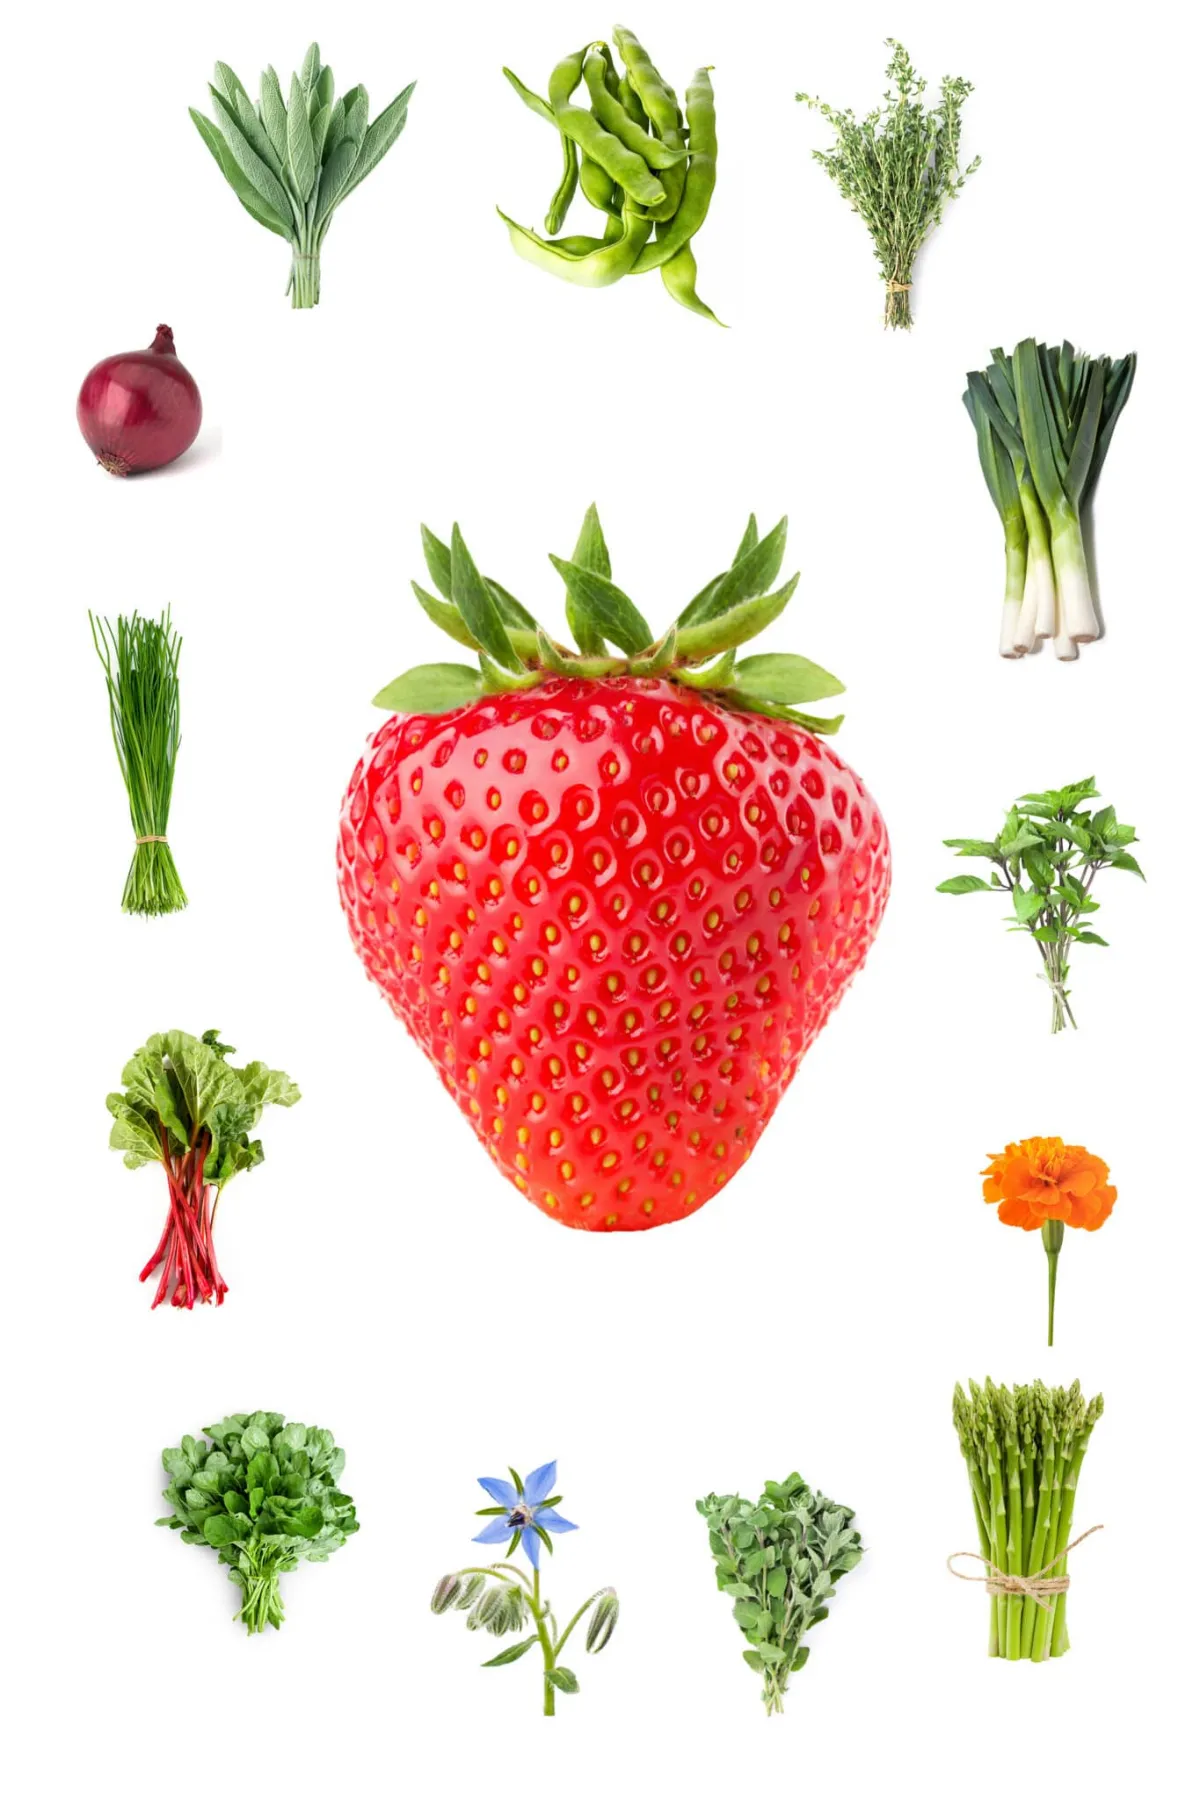 plantes compagnes des fraisiers pour stimuler la production quel legume mettre a cote des fraisiers